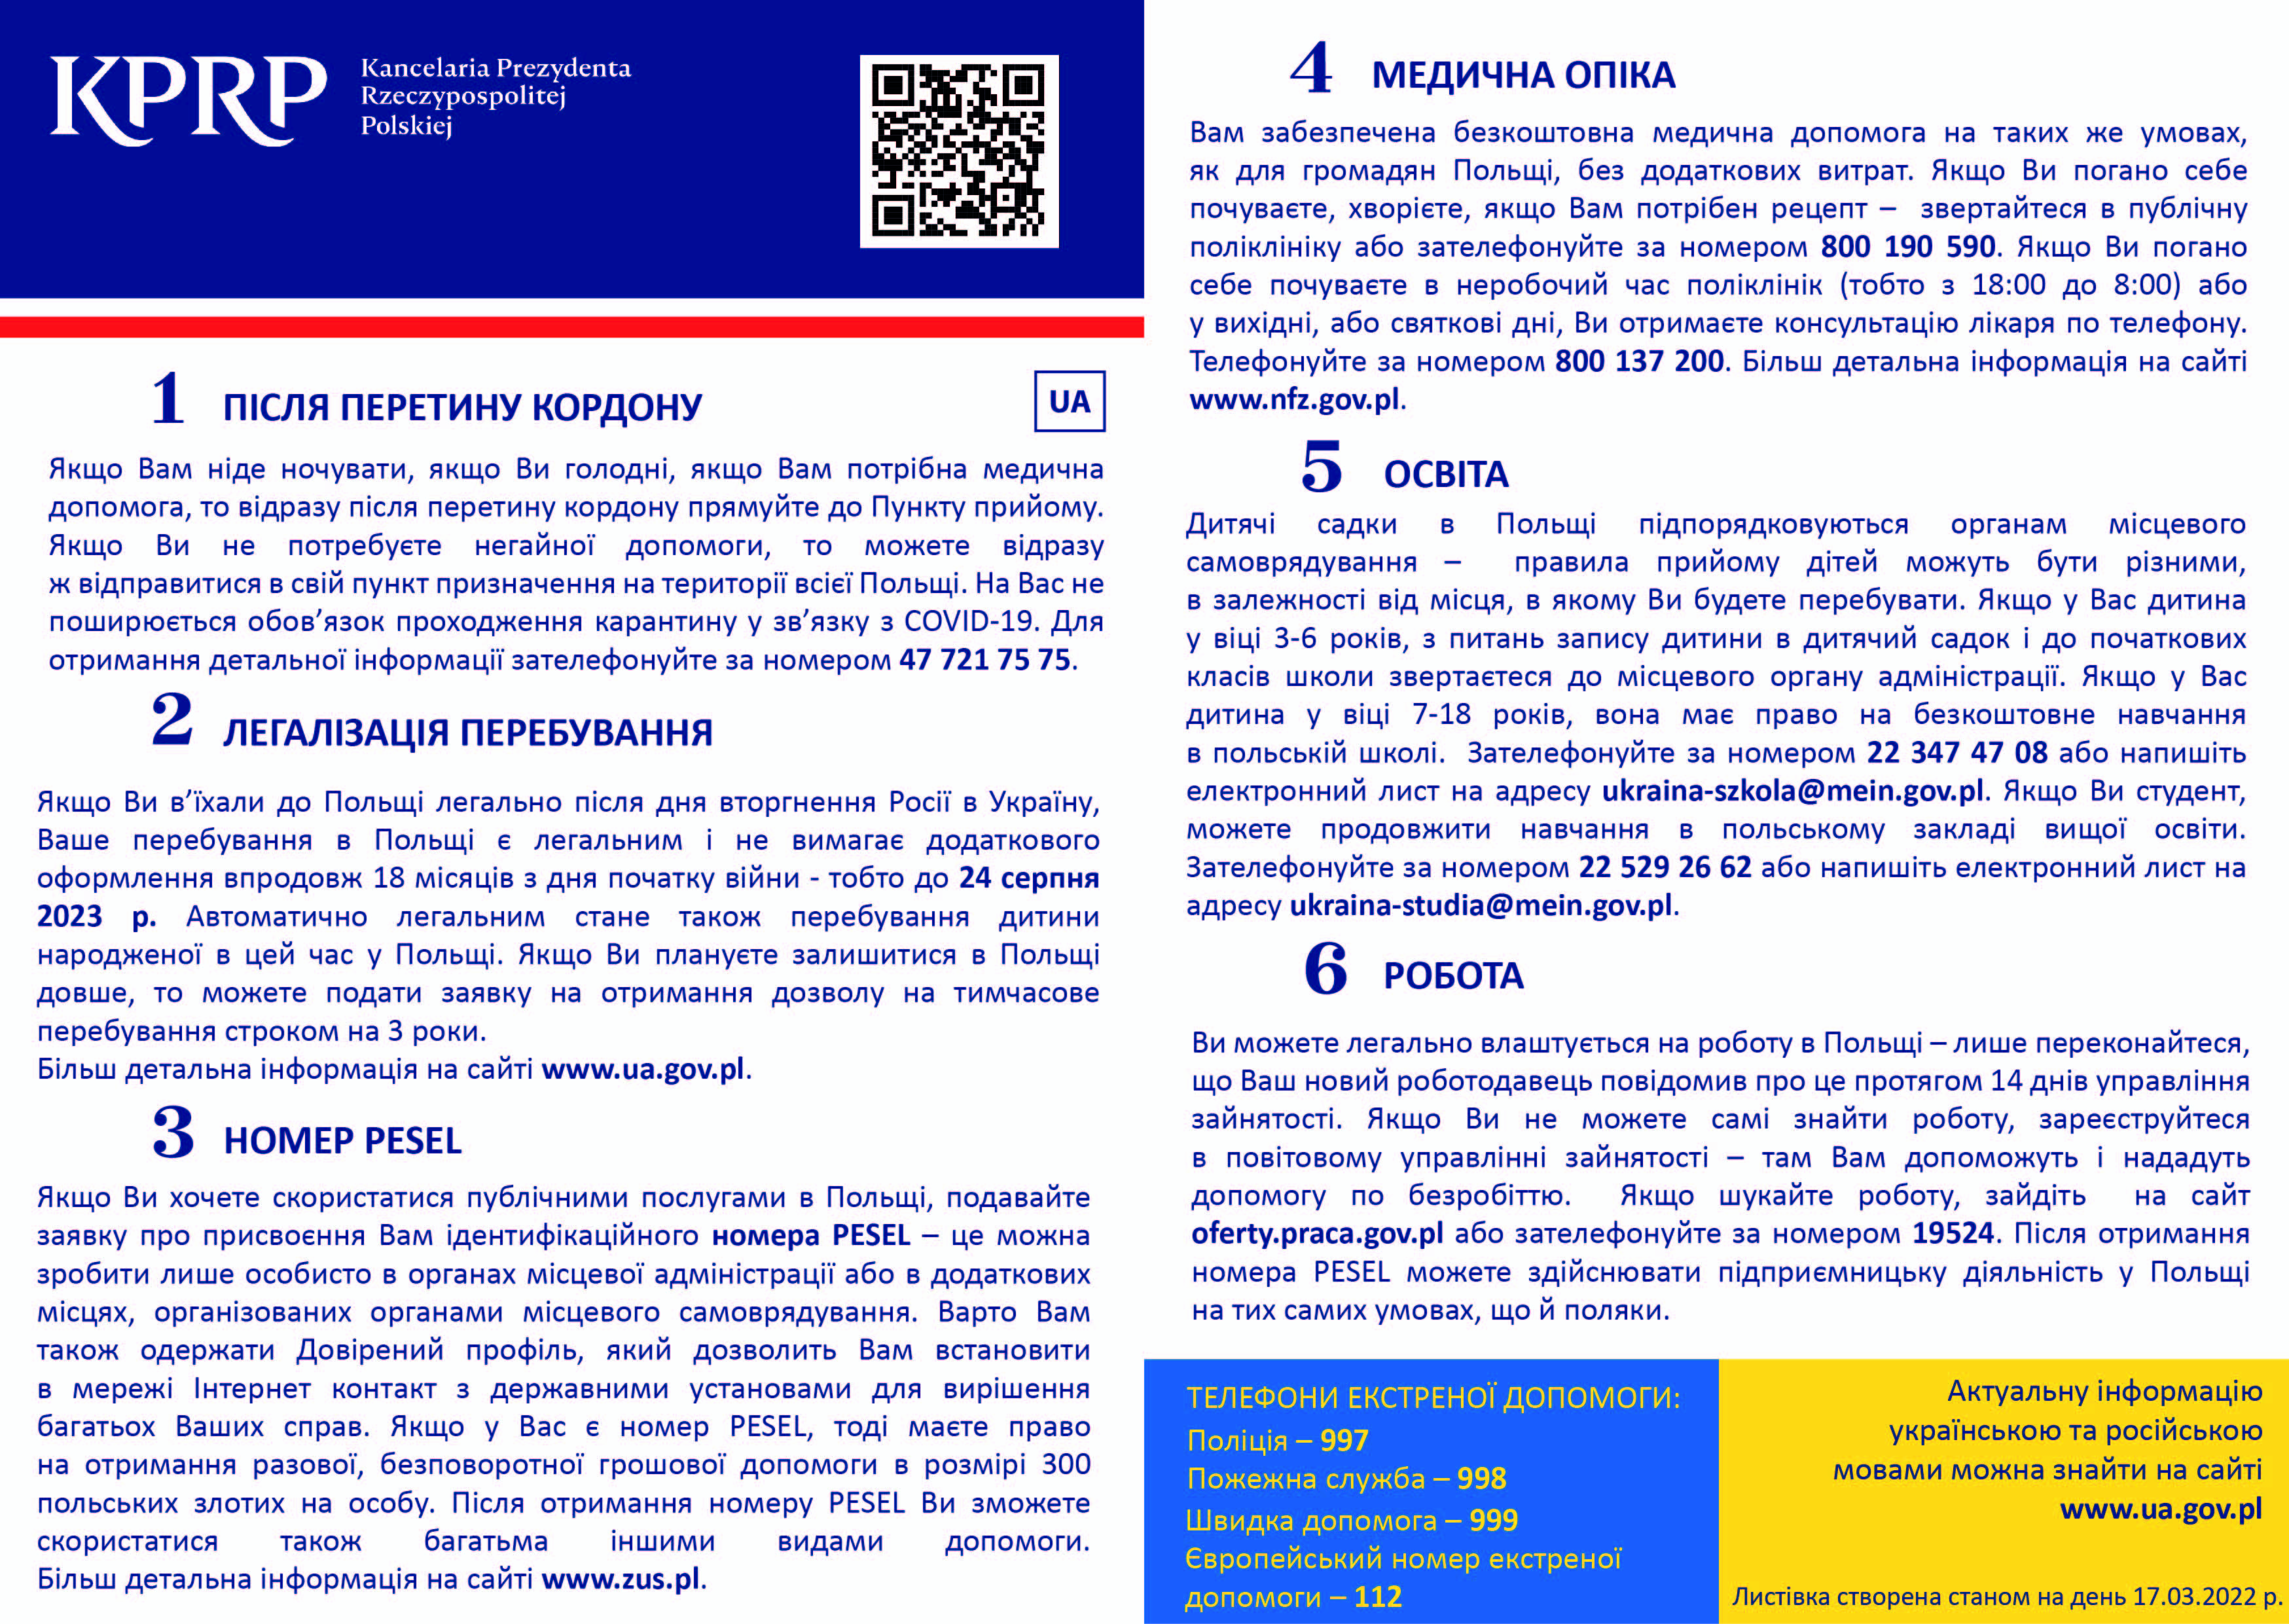 Ulotka dla uchodźców z Ukrainy w języku ukraińskim informująca co zrobić po przekroczeniu granicy, jak uzyskać numer PESEL, o legalności pobytu w Polsce, o opiece medycznej, edukacji dzieci oraz o możliwości podjęcia pracy